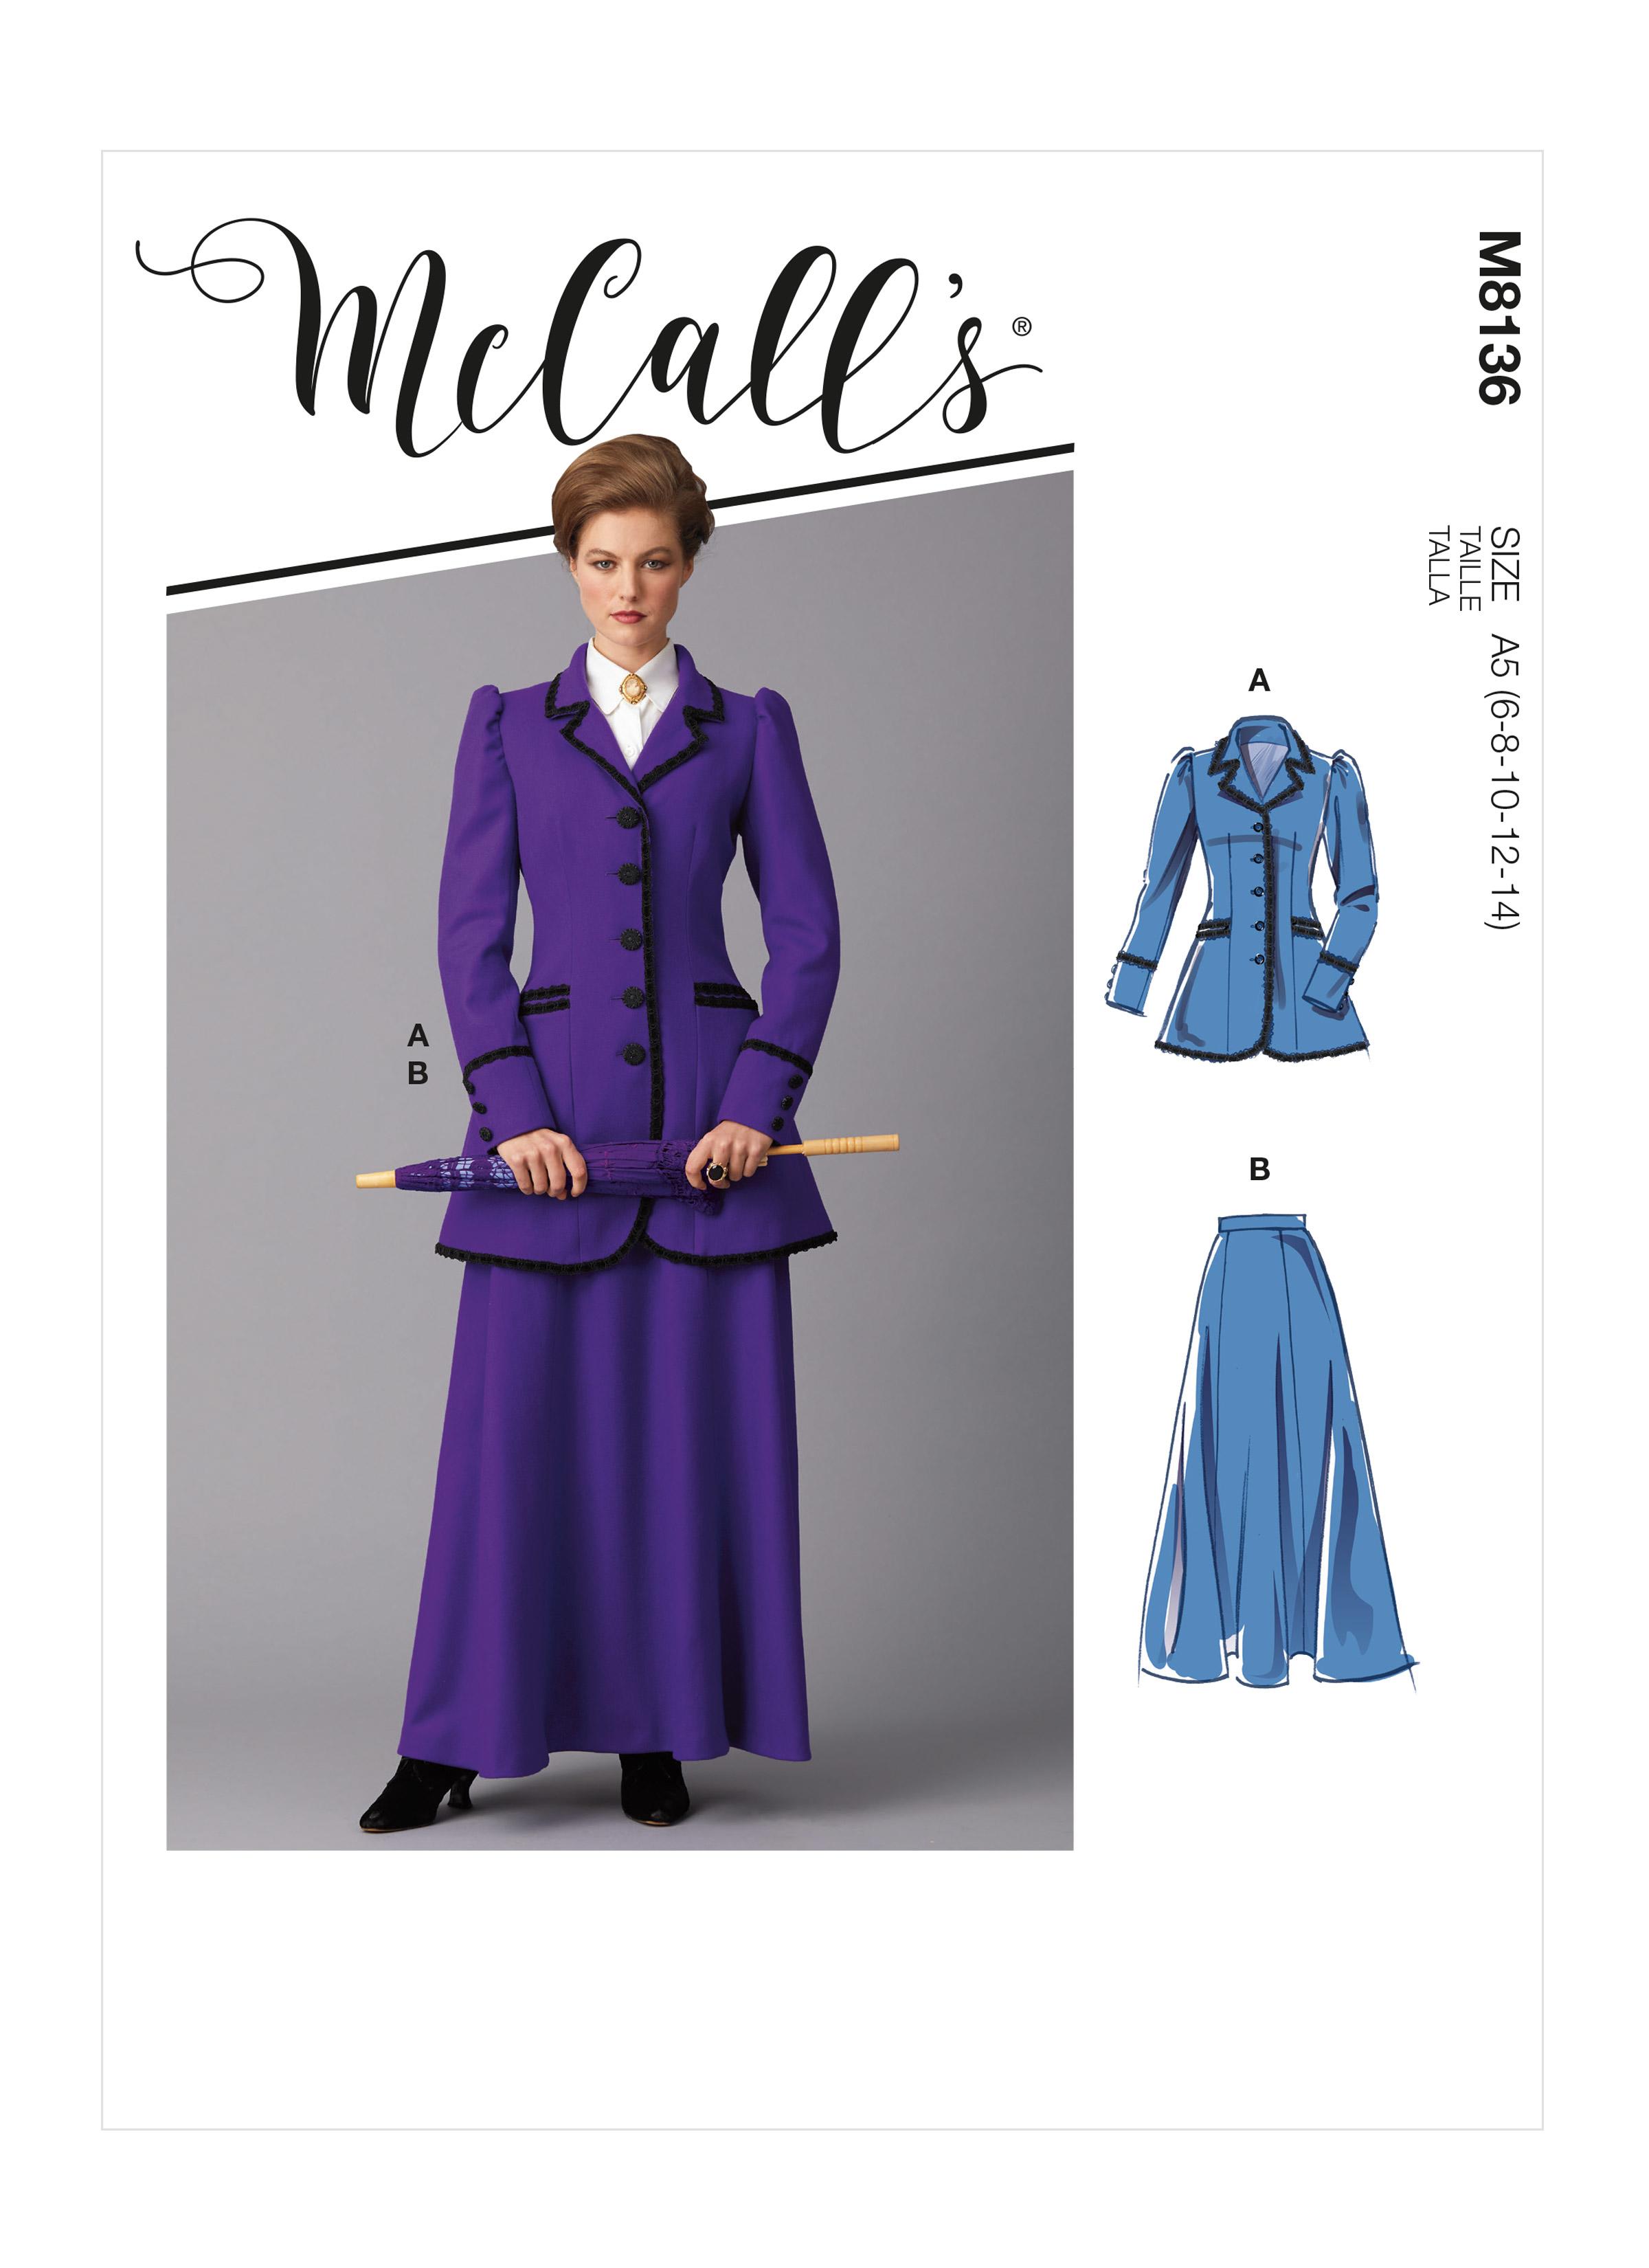 McCall's M8136 Misses' Costume